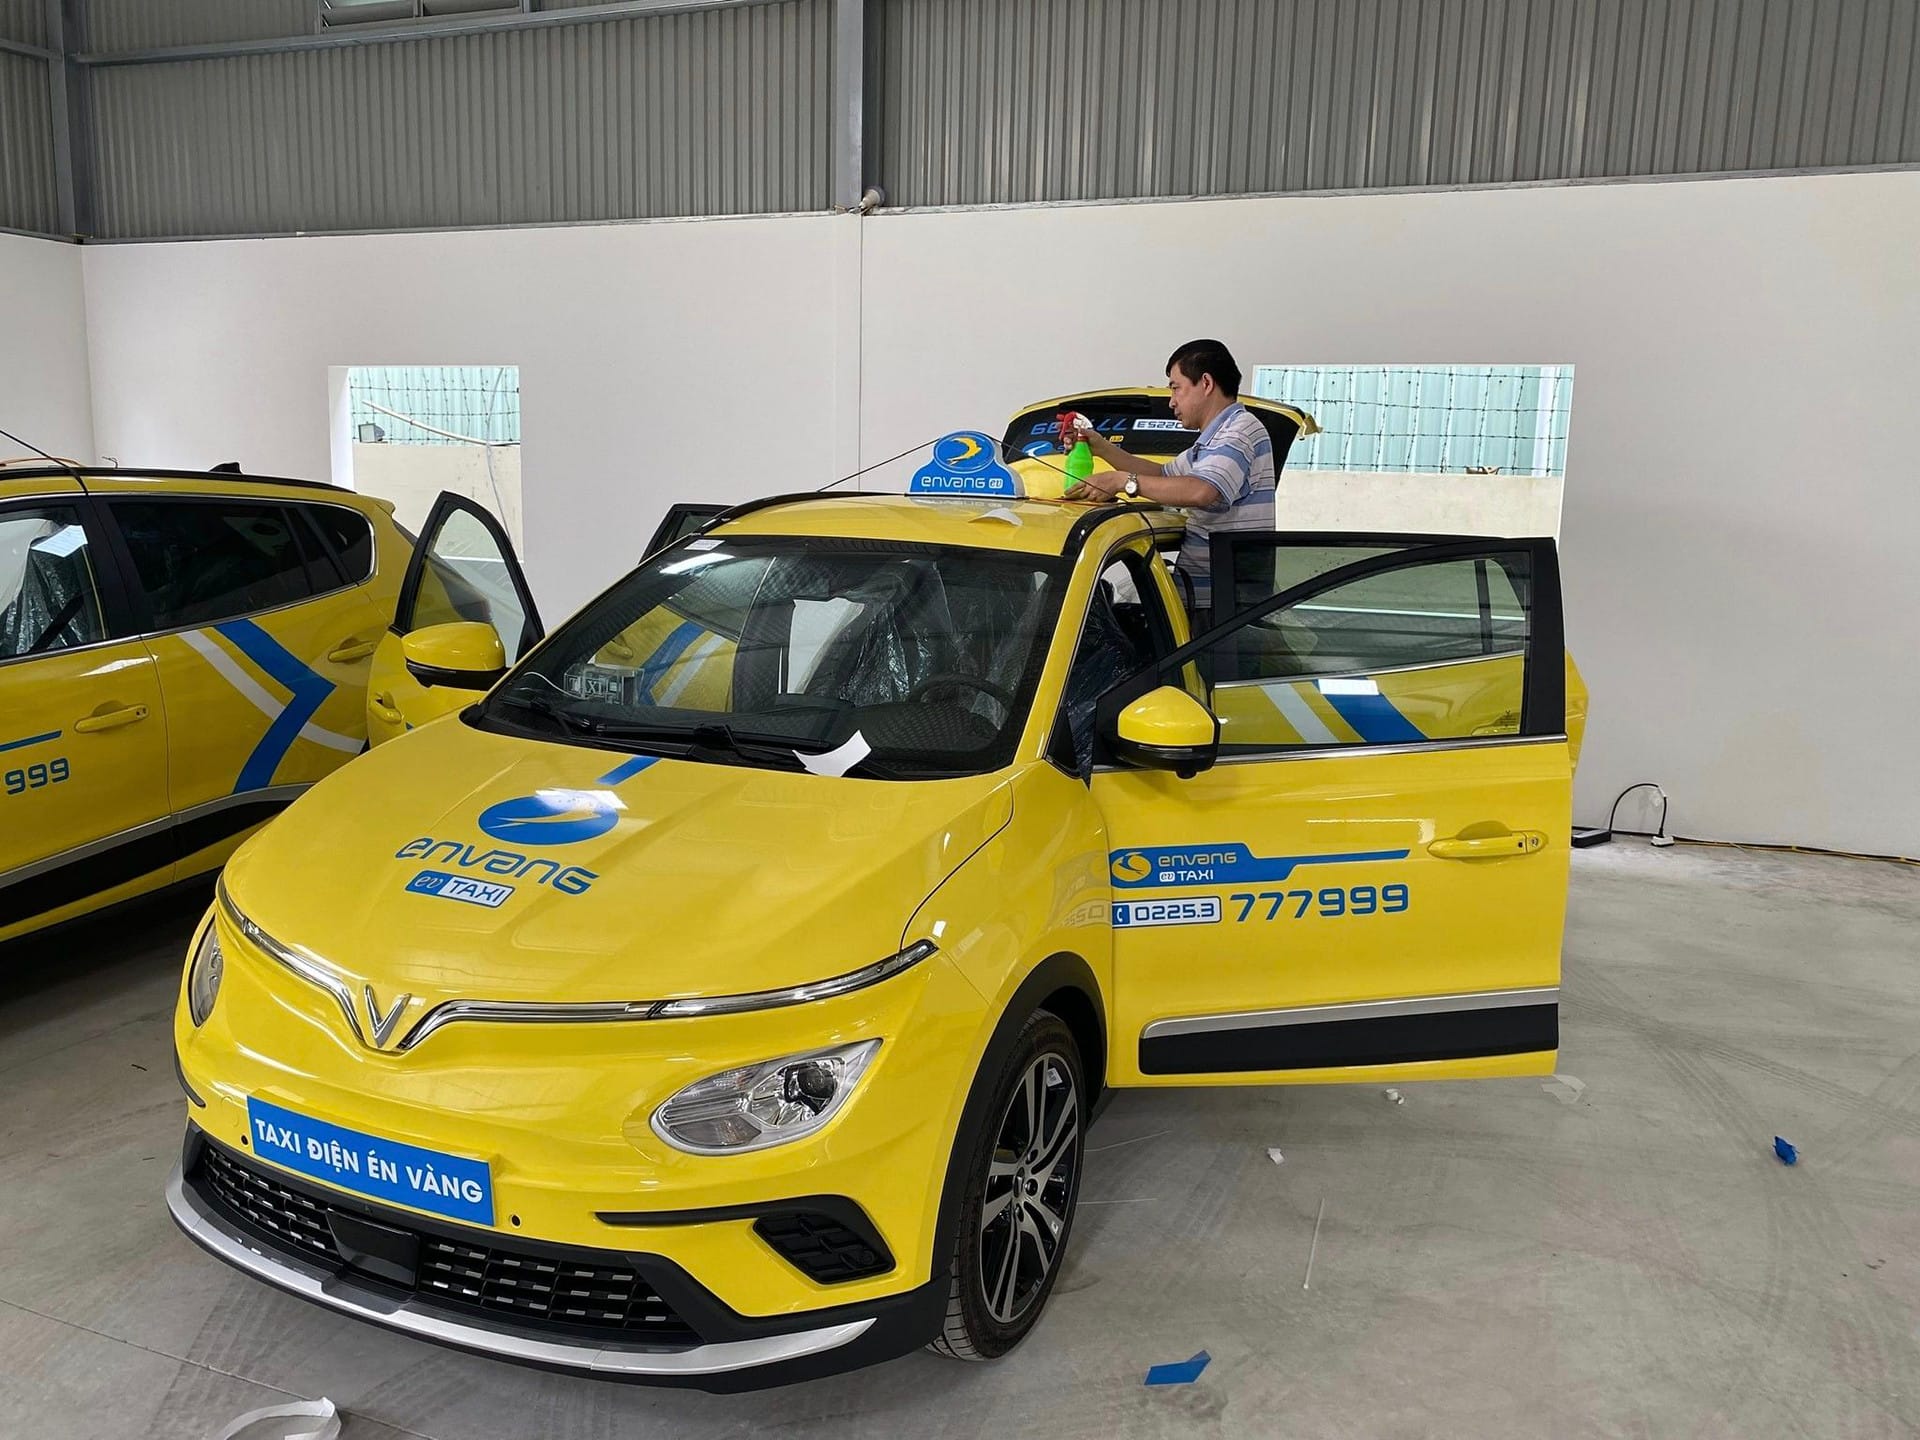 Sau Hà Nội và TP.HCM, người dân Hải Phòng sắp được trải nghiệm taxi điện VinFast nhưng lại từ một hãng taxi truyền thống quen thuộc - Ảnh 1.